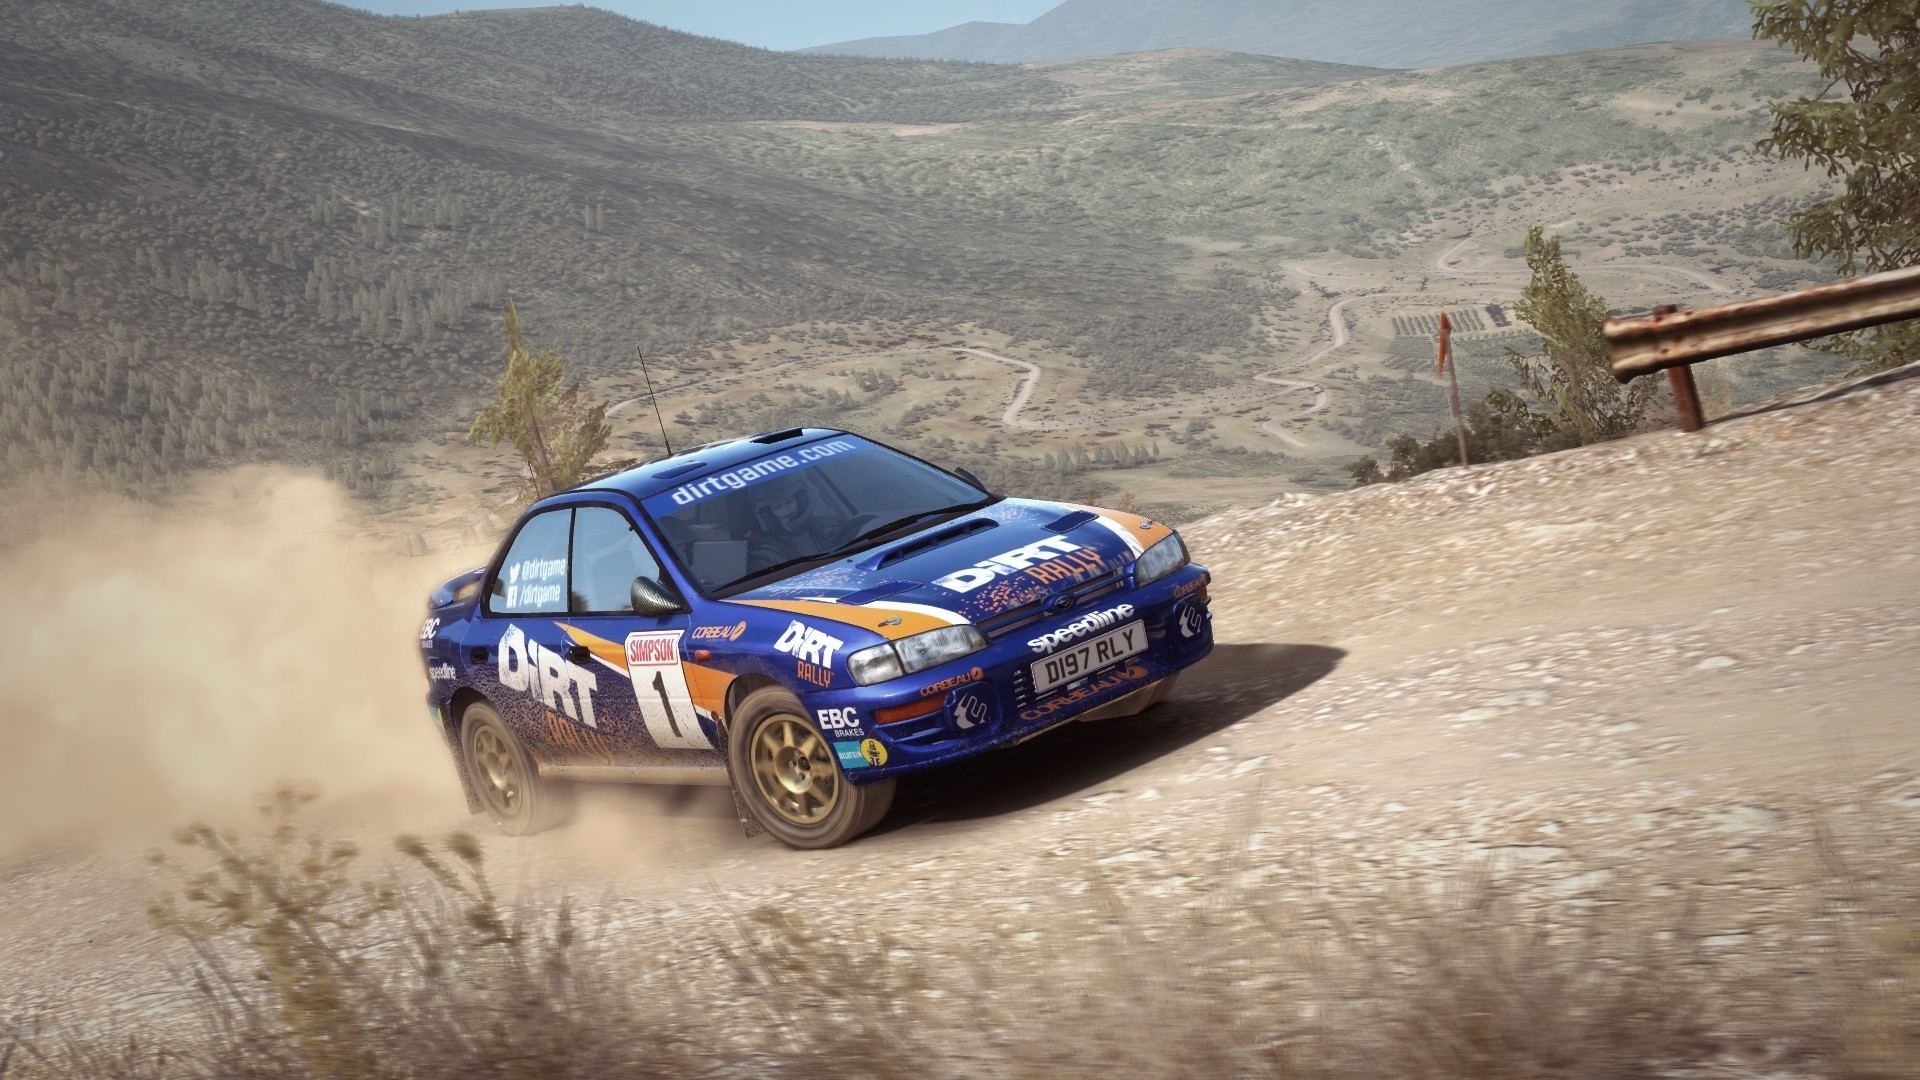 A Subaru rally car driving through the dust.